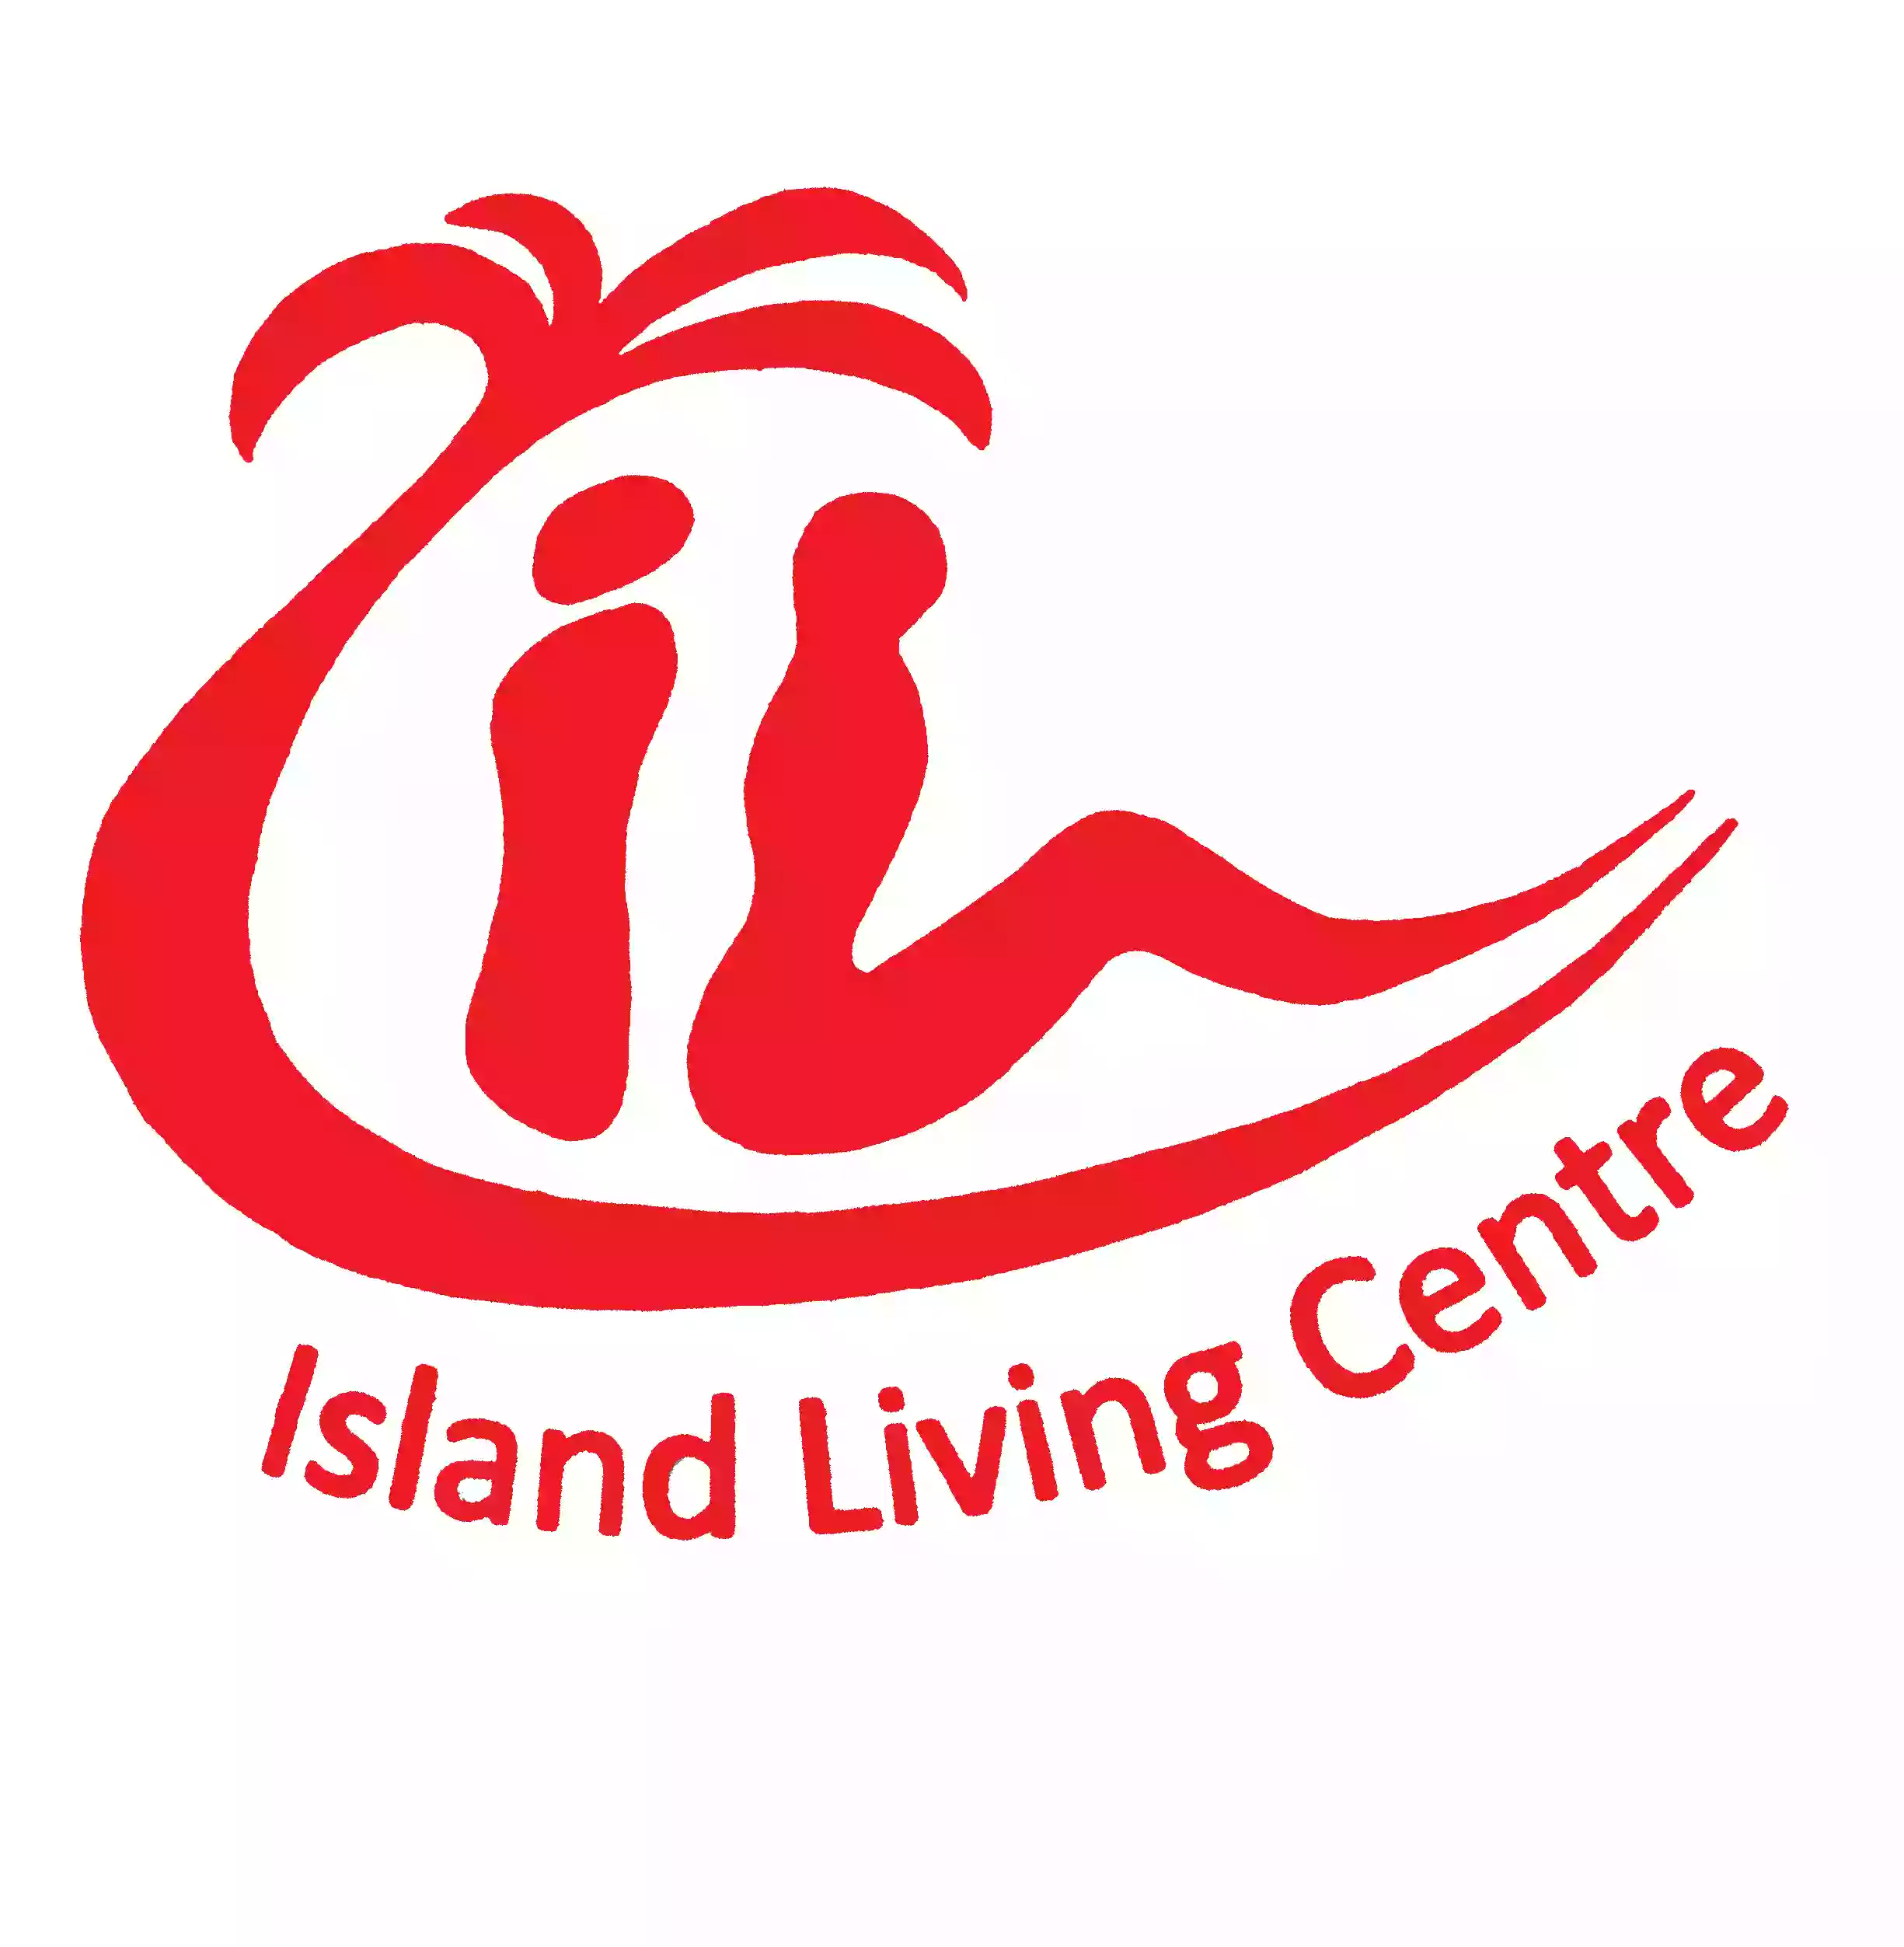 Island Living Centre